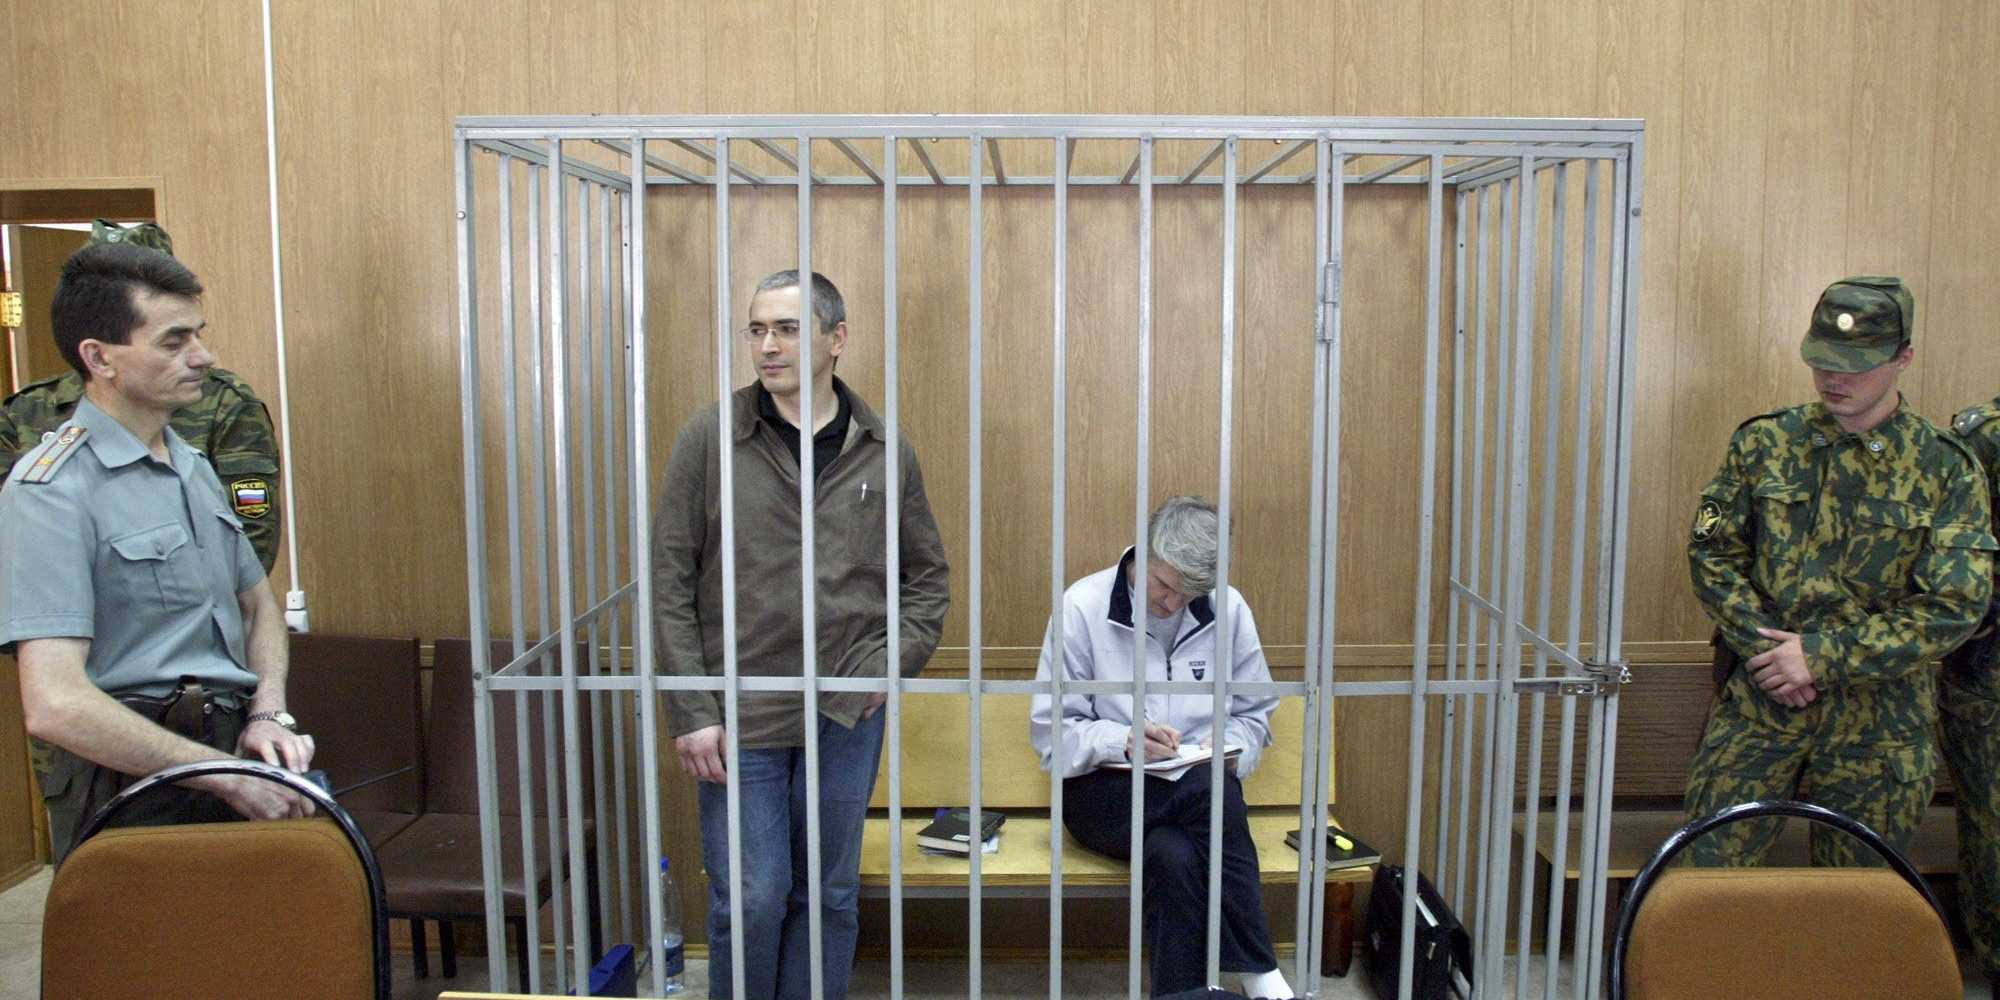 Mikhail Khodorkovsky at his trial, Moscow 2004.